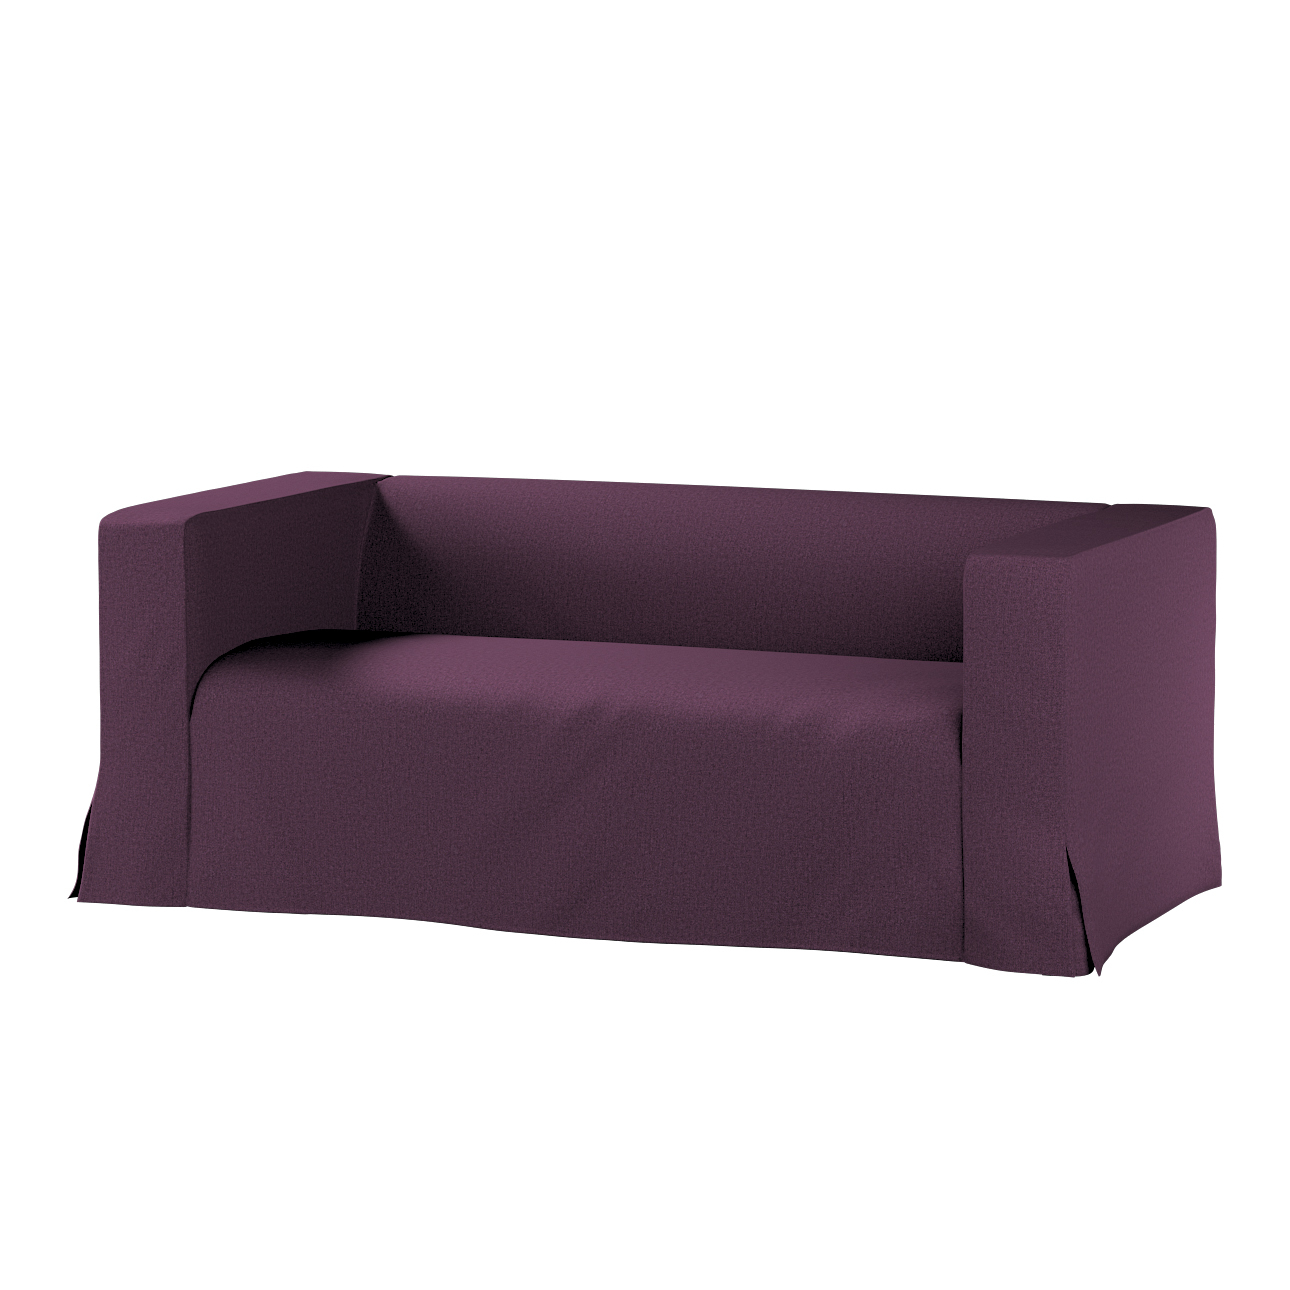 Bezug für Klippan 2-Sitzer Sofa, lang mit Kellerfalte, pflaume, Klippan 2-e günstig online kaufen